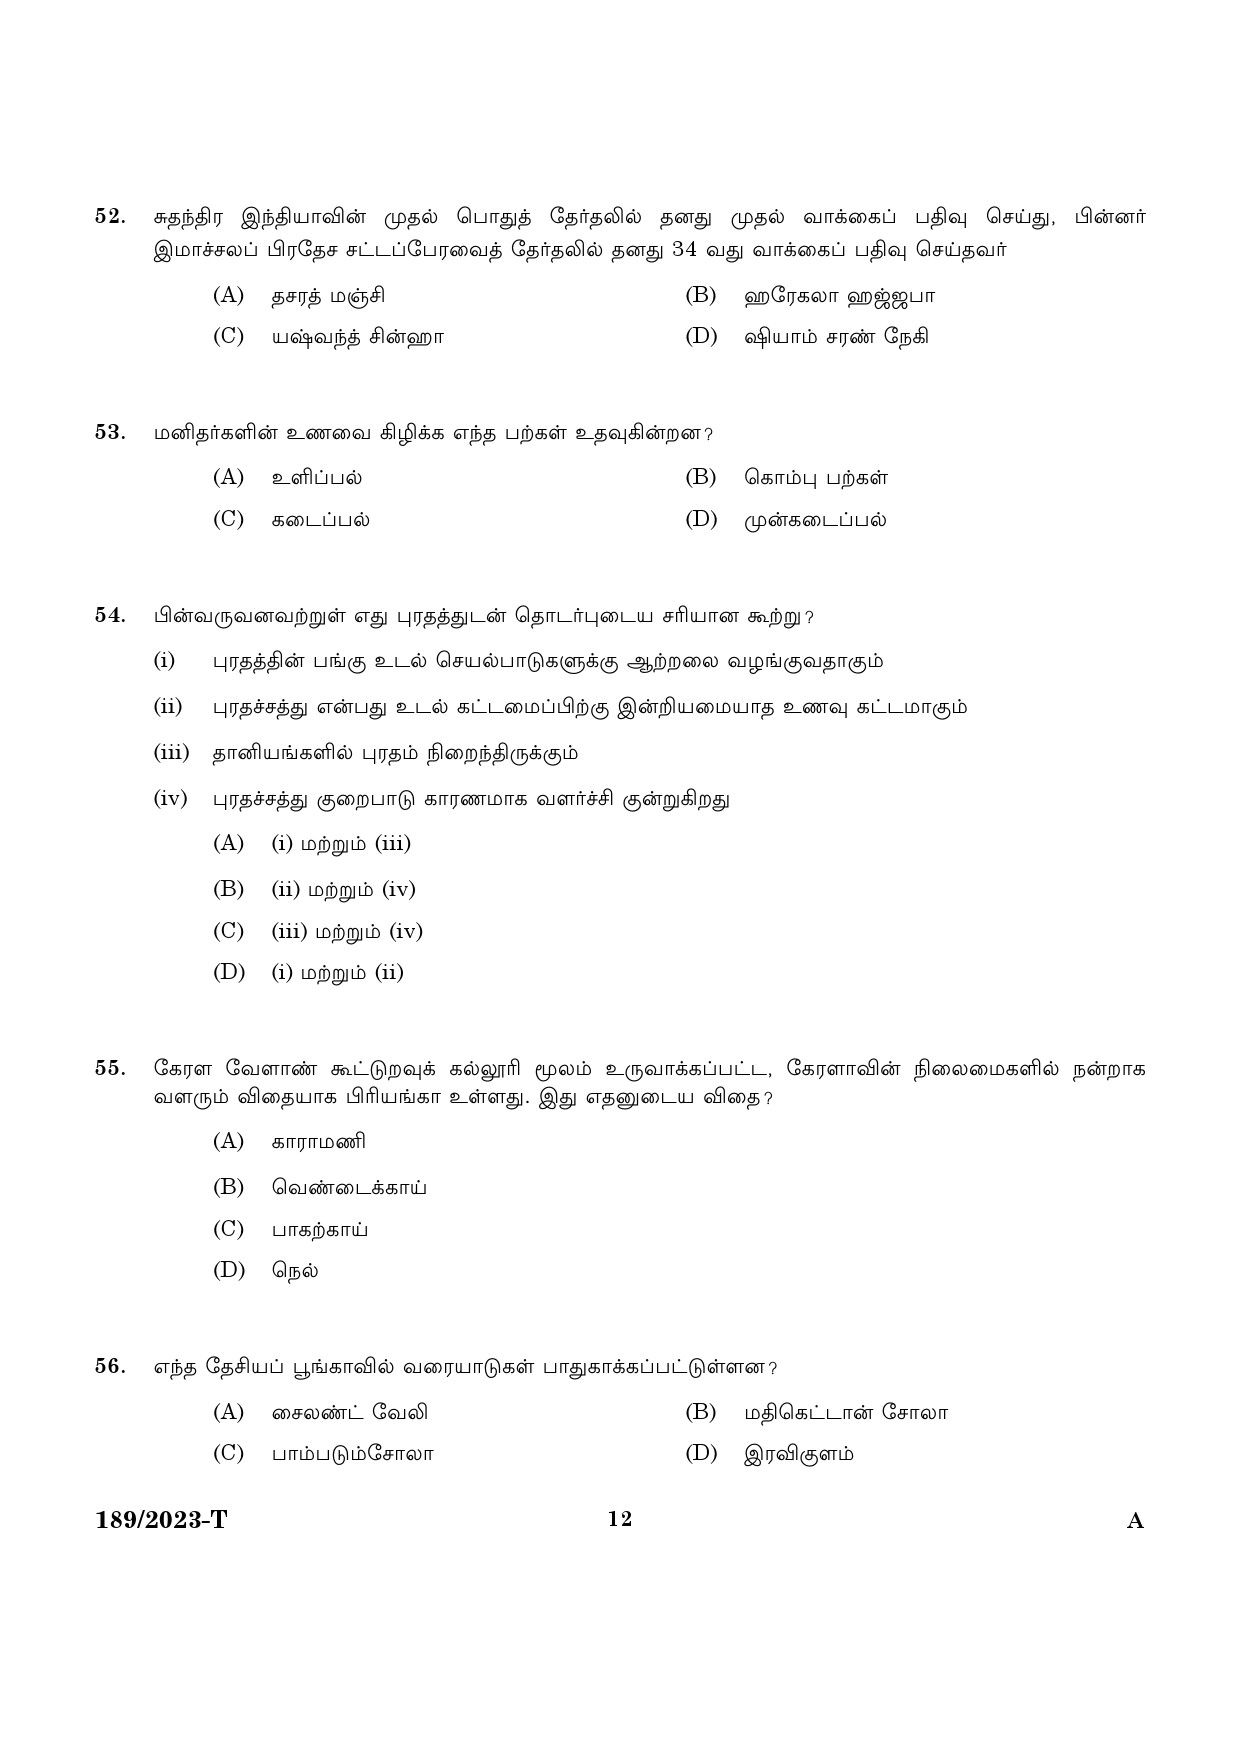 KPSC LGS Tamil Exam 2023 Code 1892023 T 10